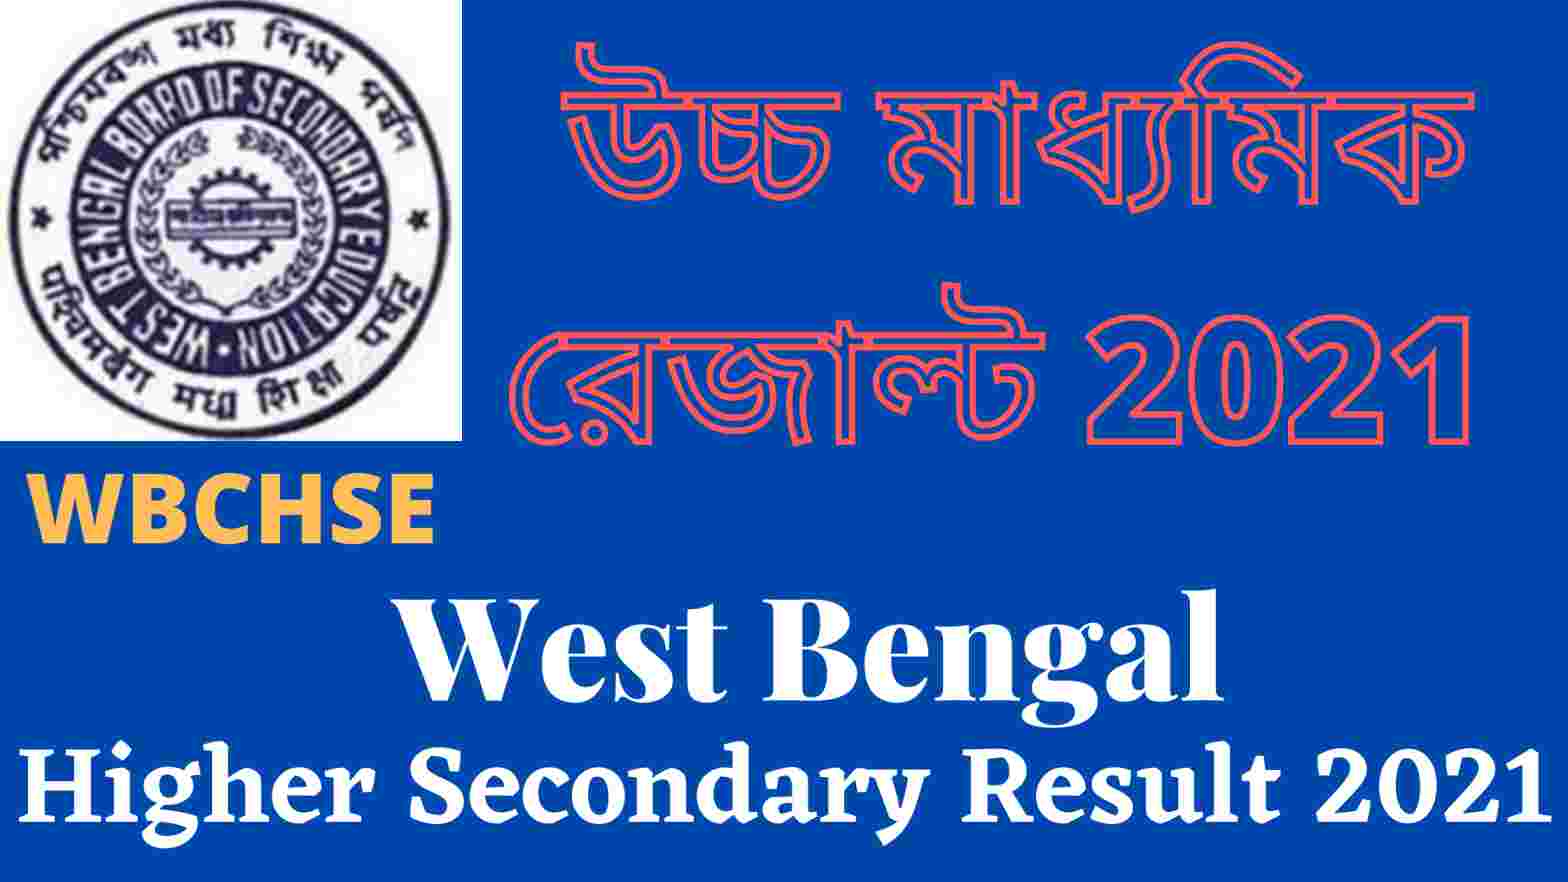 উচ্চ মাধ্যমিক রেজাল্ট 2021: West Bengal Higher Secondary Result 2021